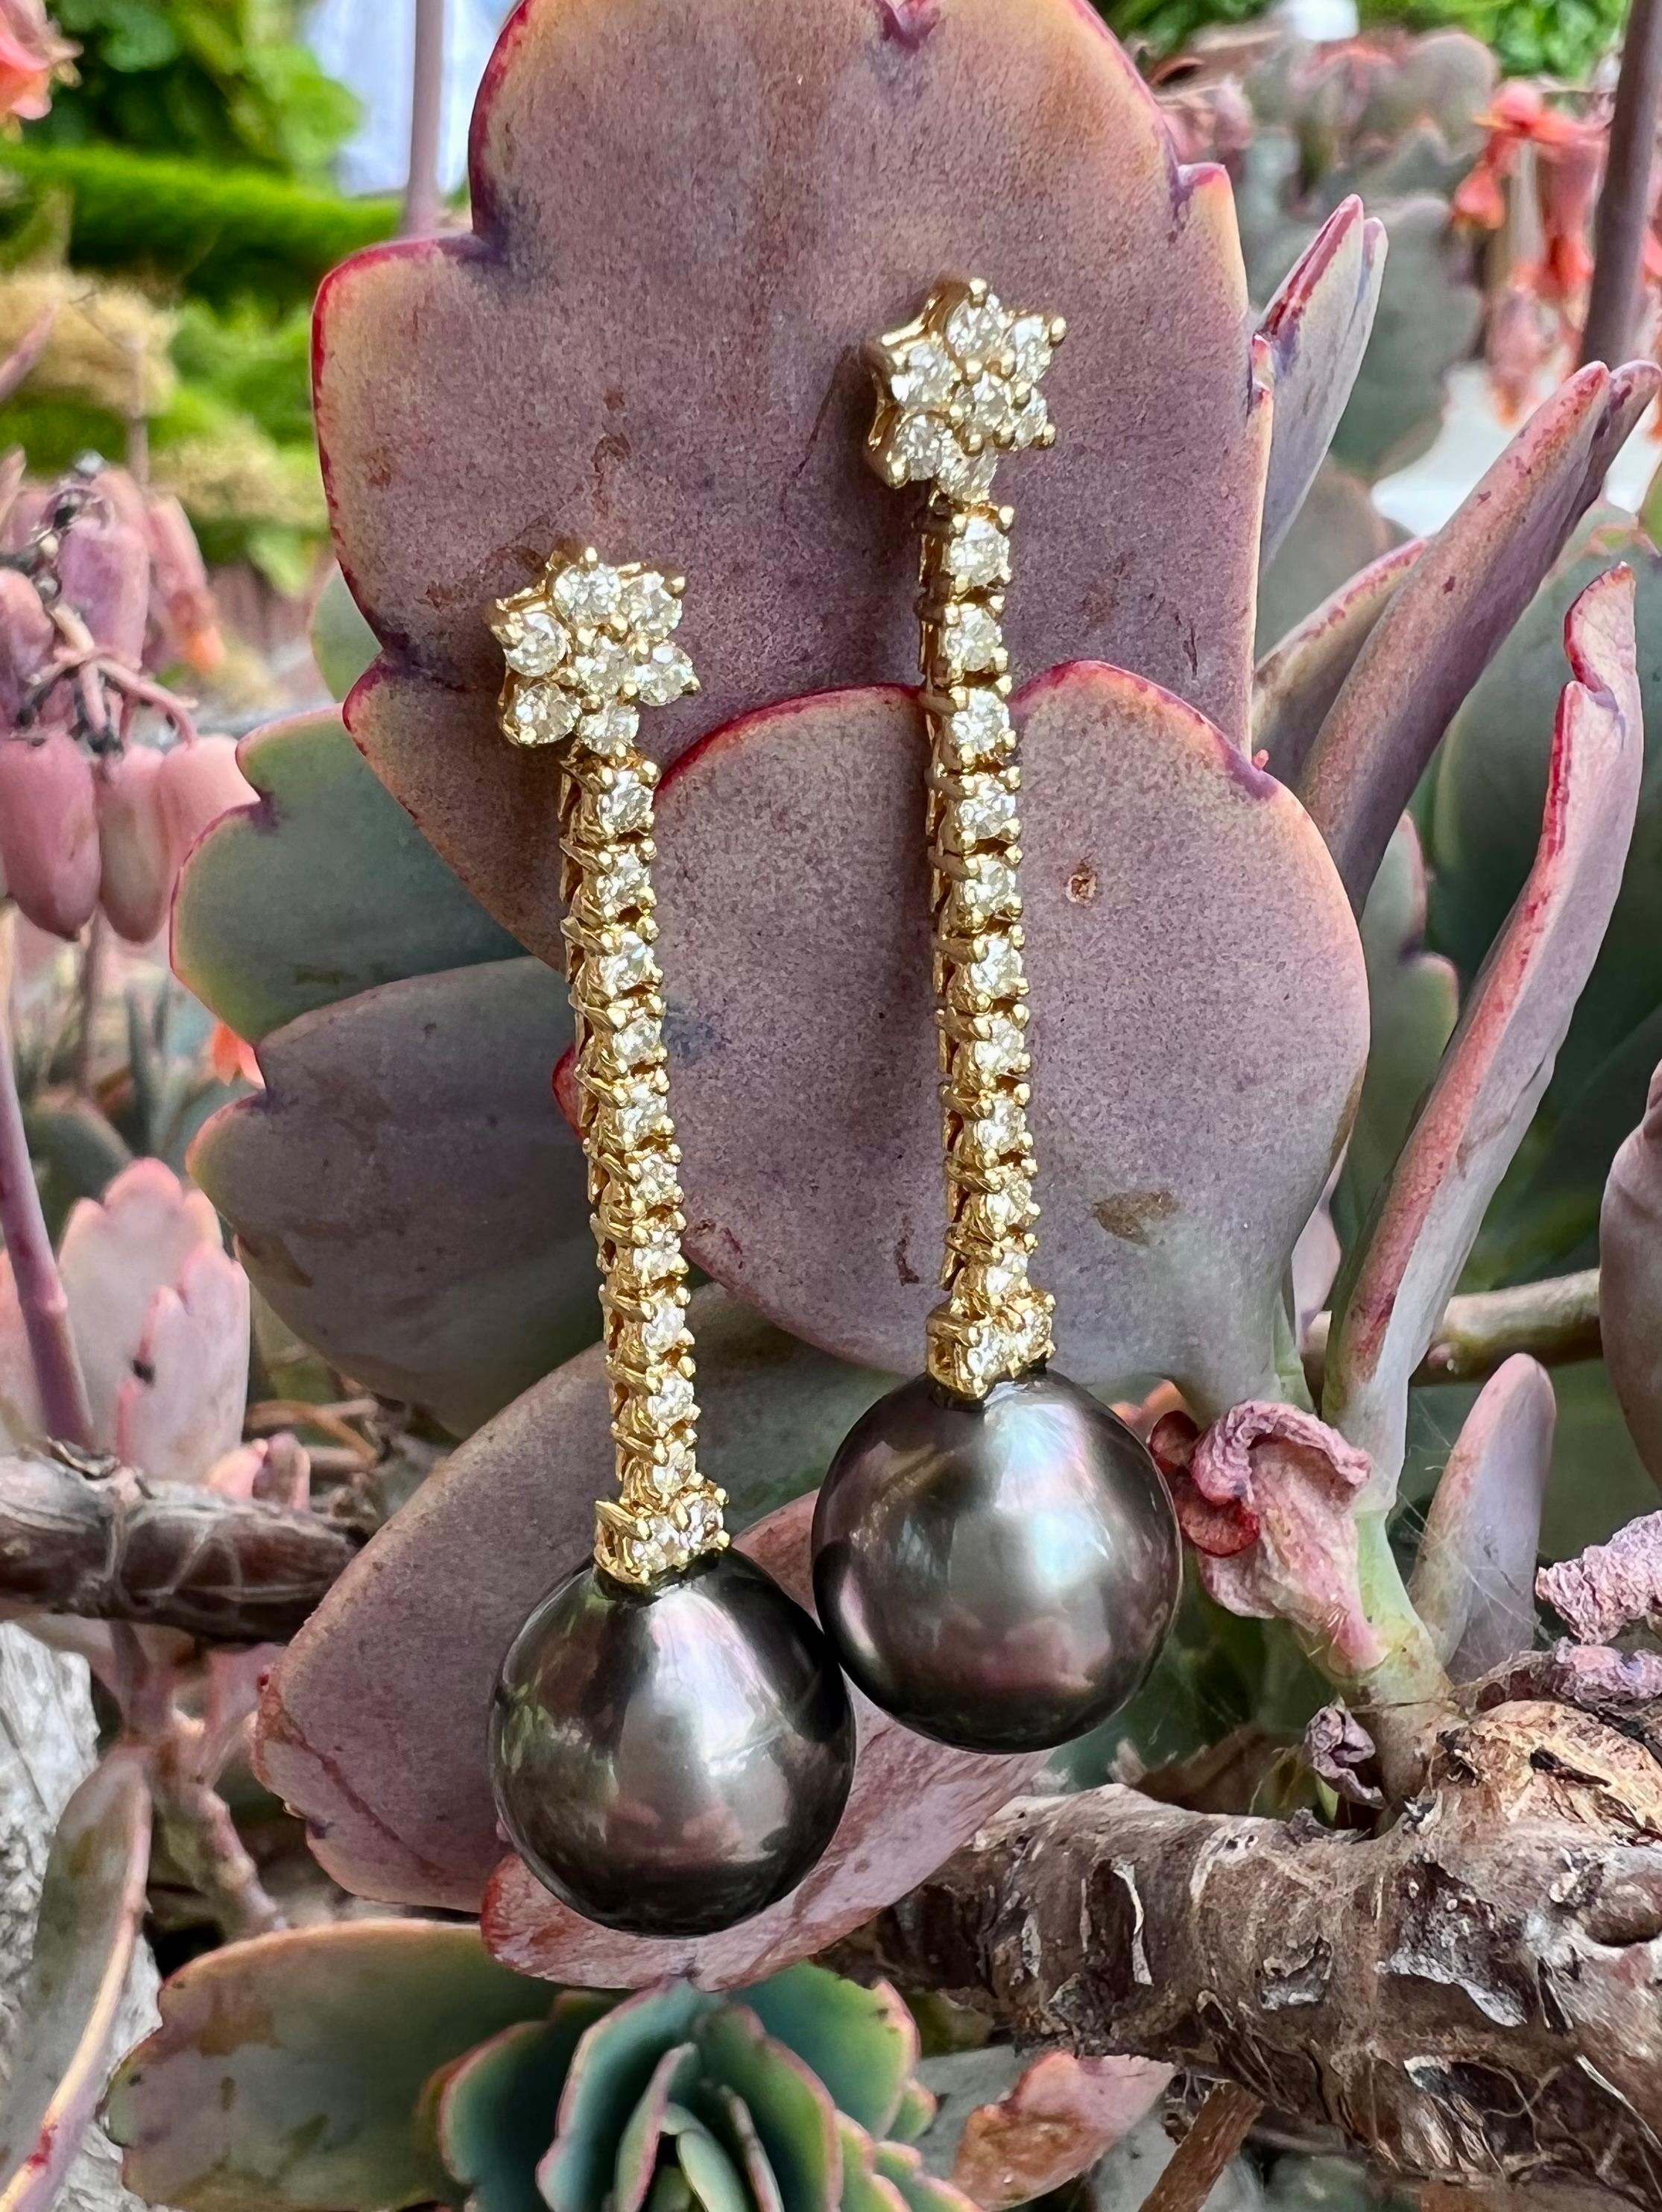 tahitian pearl drop earrings